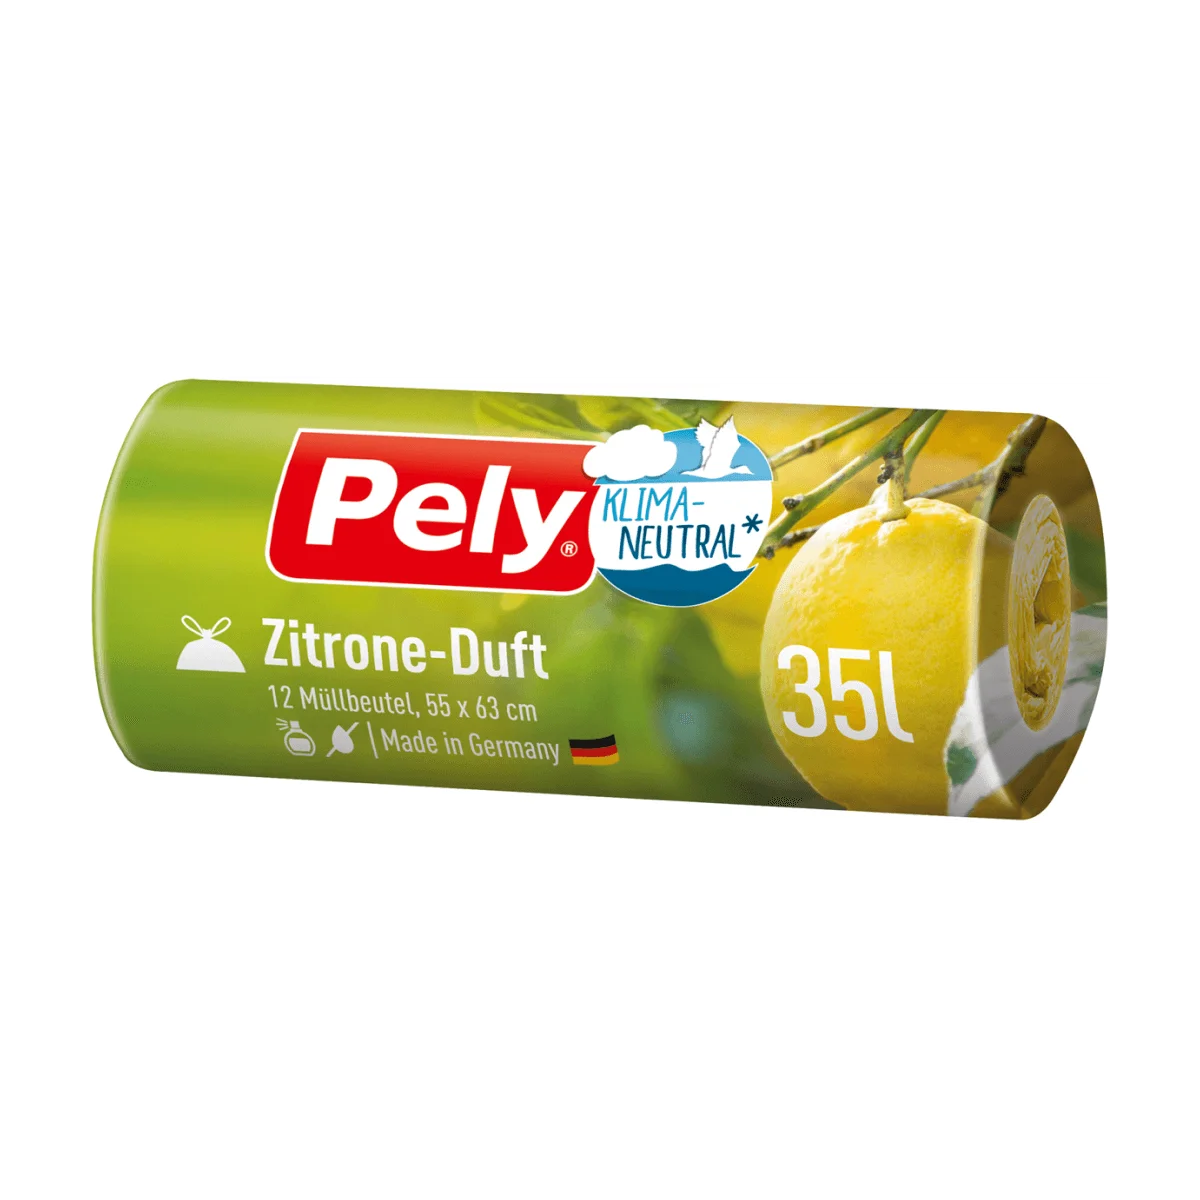 PELY® KLIMANEUTRAL Müllbeutel 35 l mit Zugband & Zitronen-Duft, 12 Stk